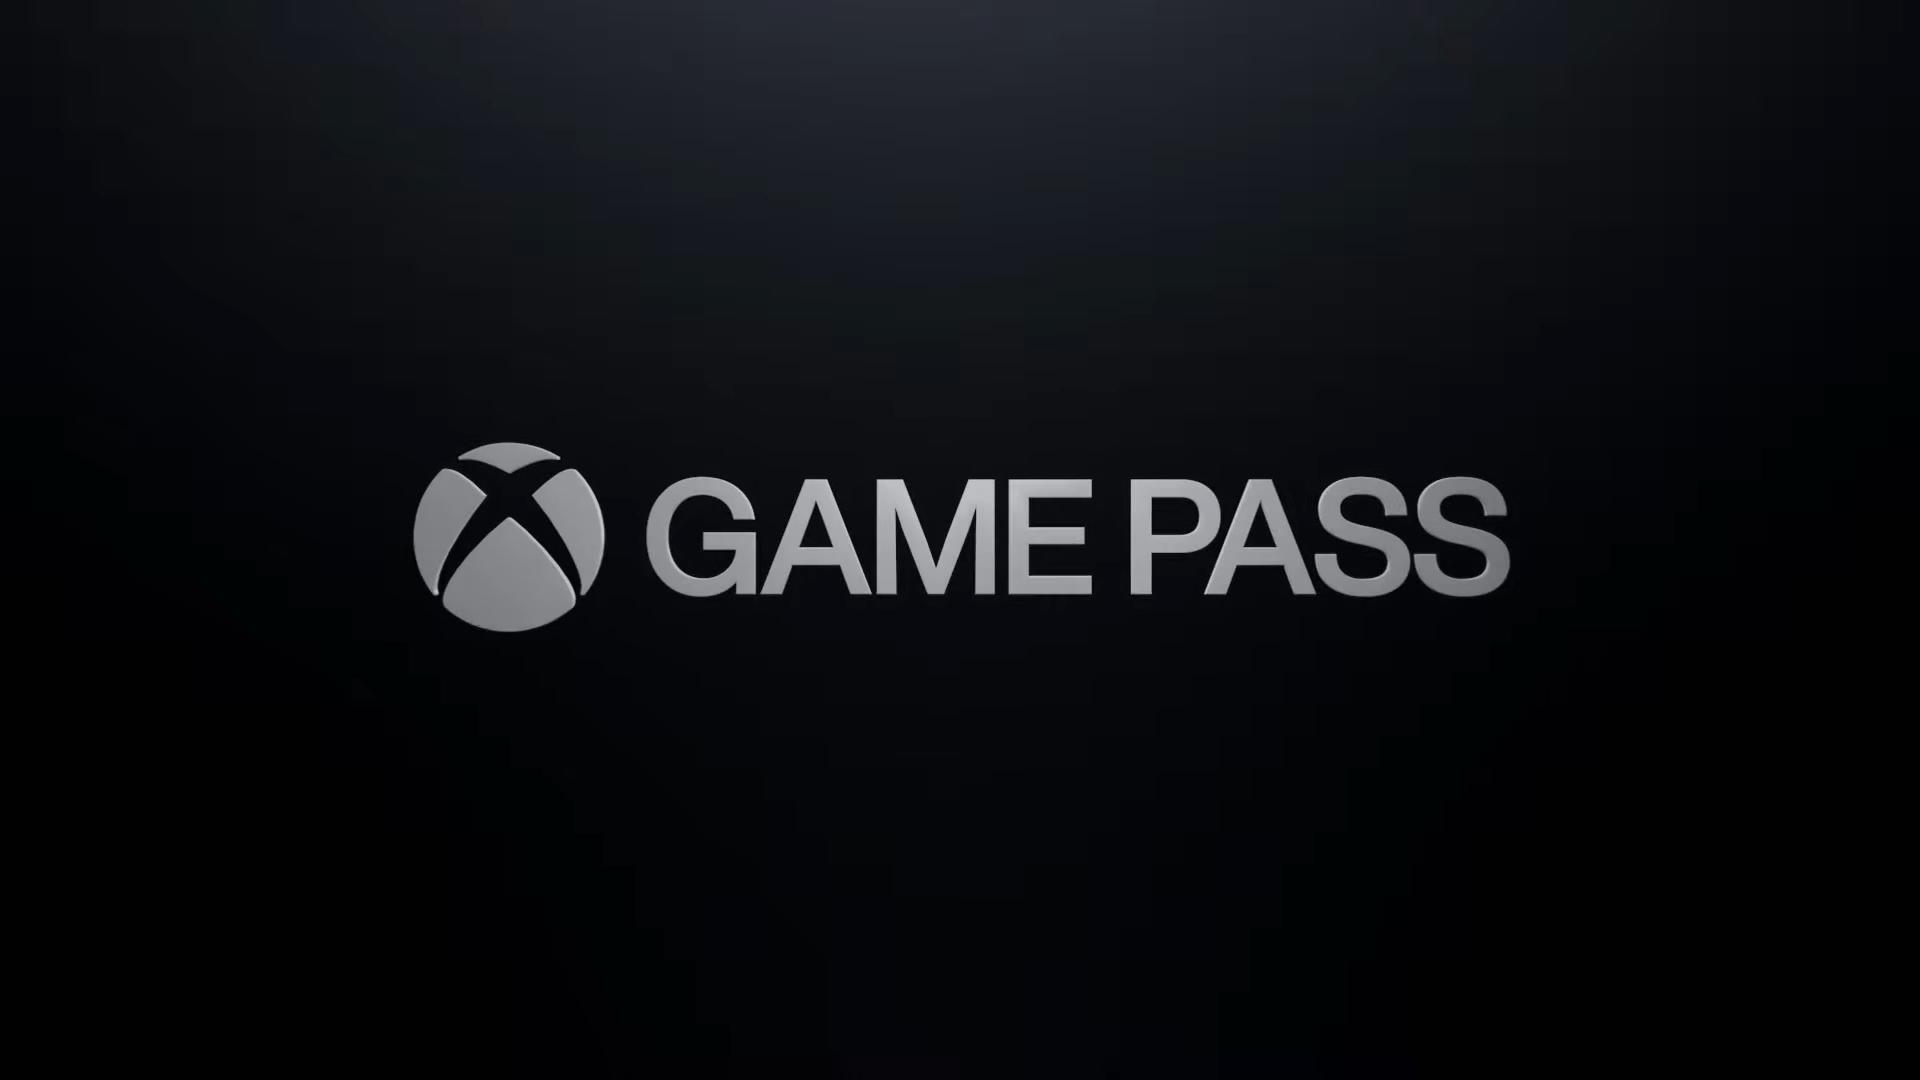 xbox game pass pc price uk